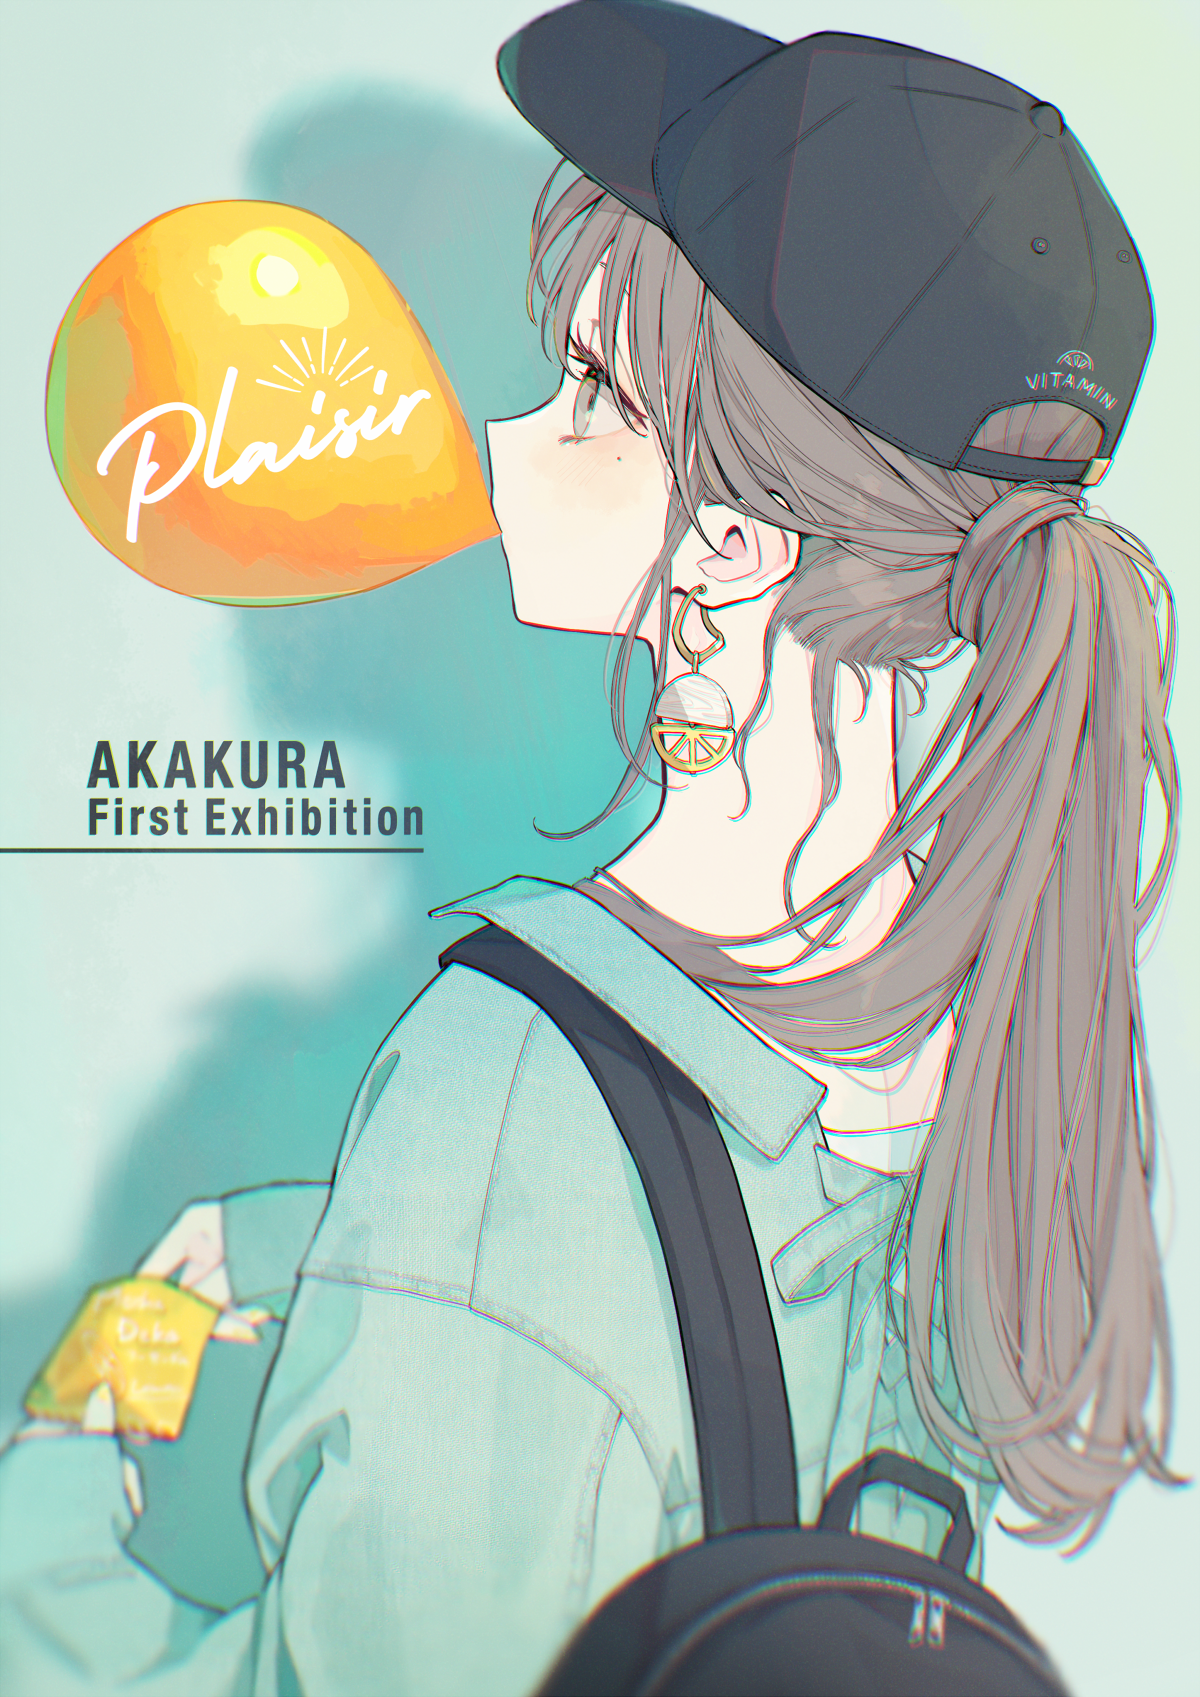 Anime 1200x1697 anime girls fantasy girl bubble gum hat digital art